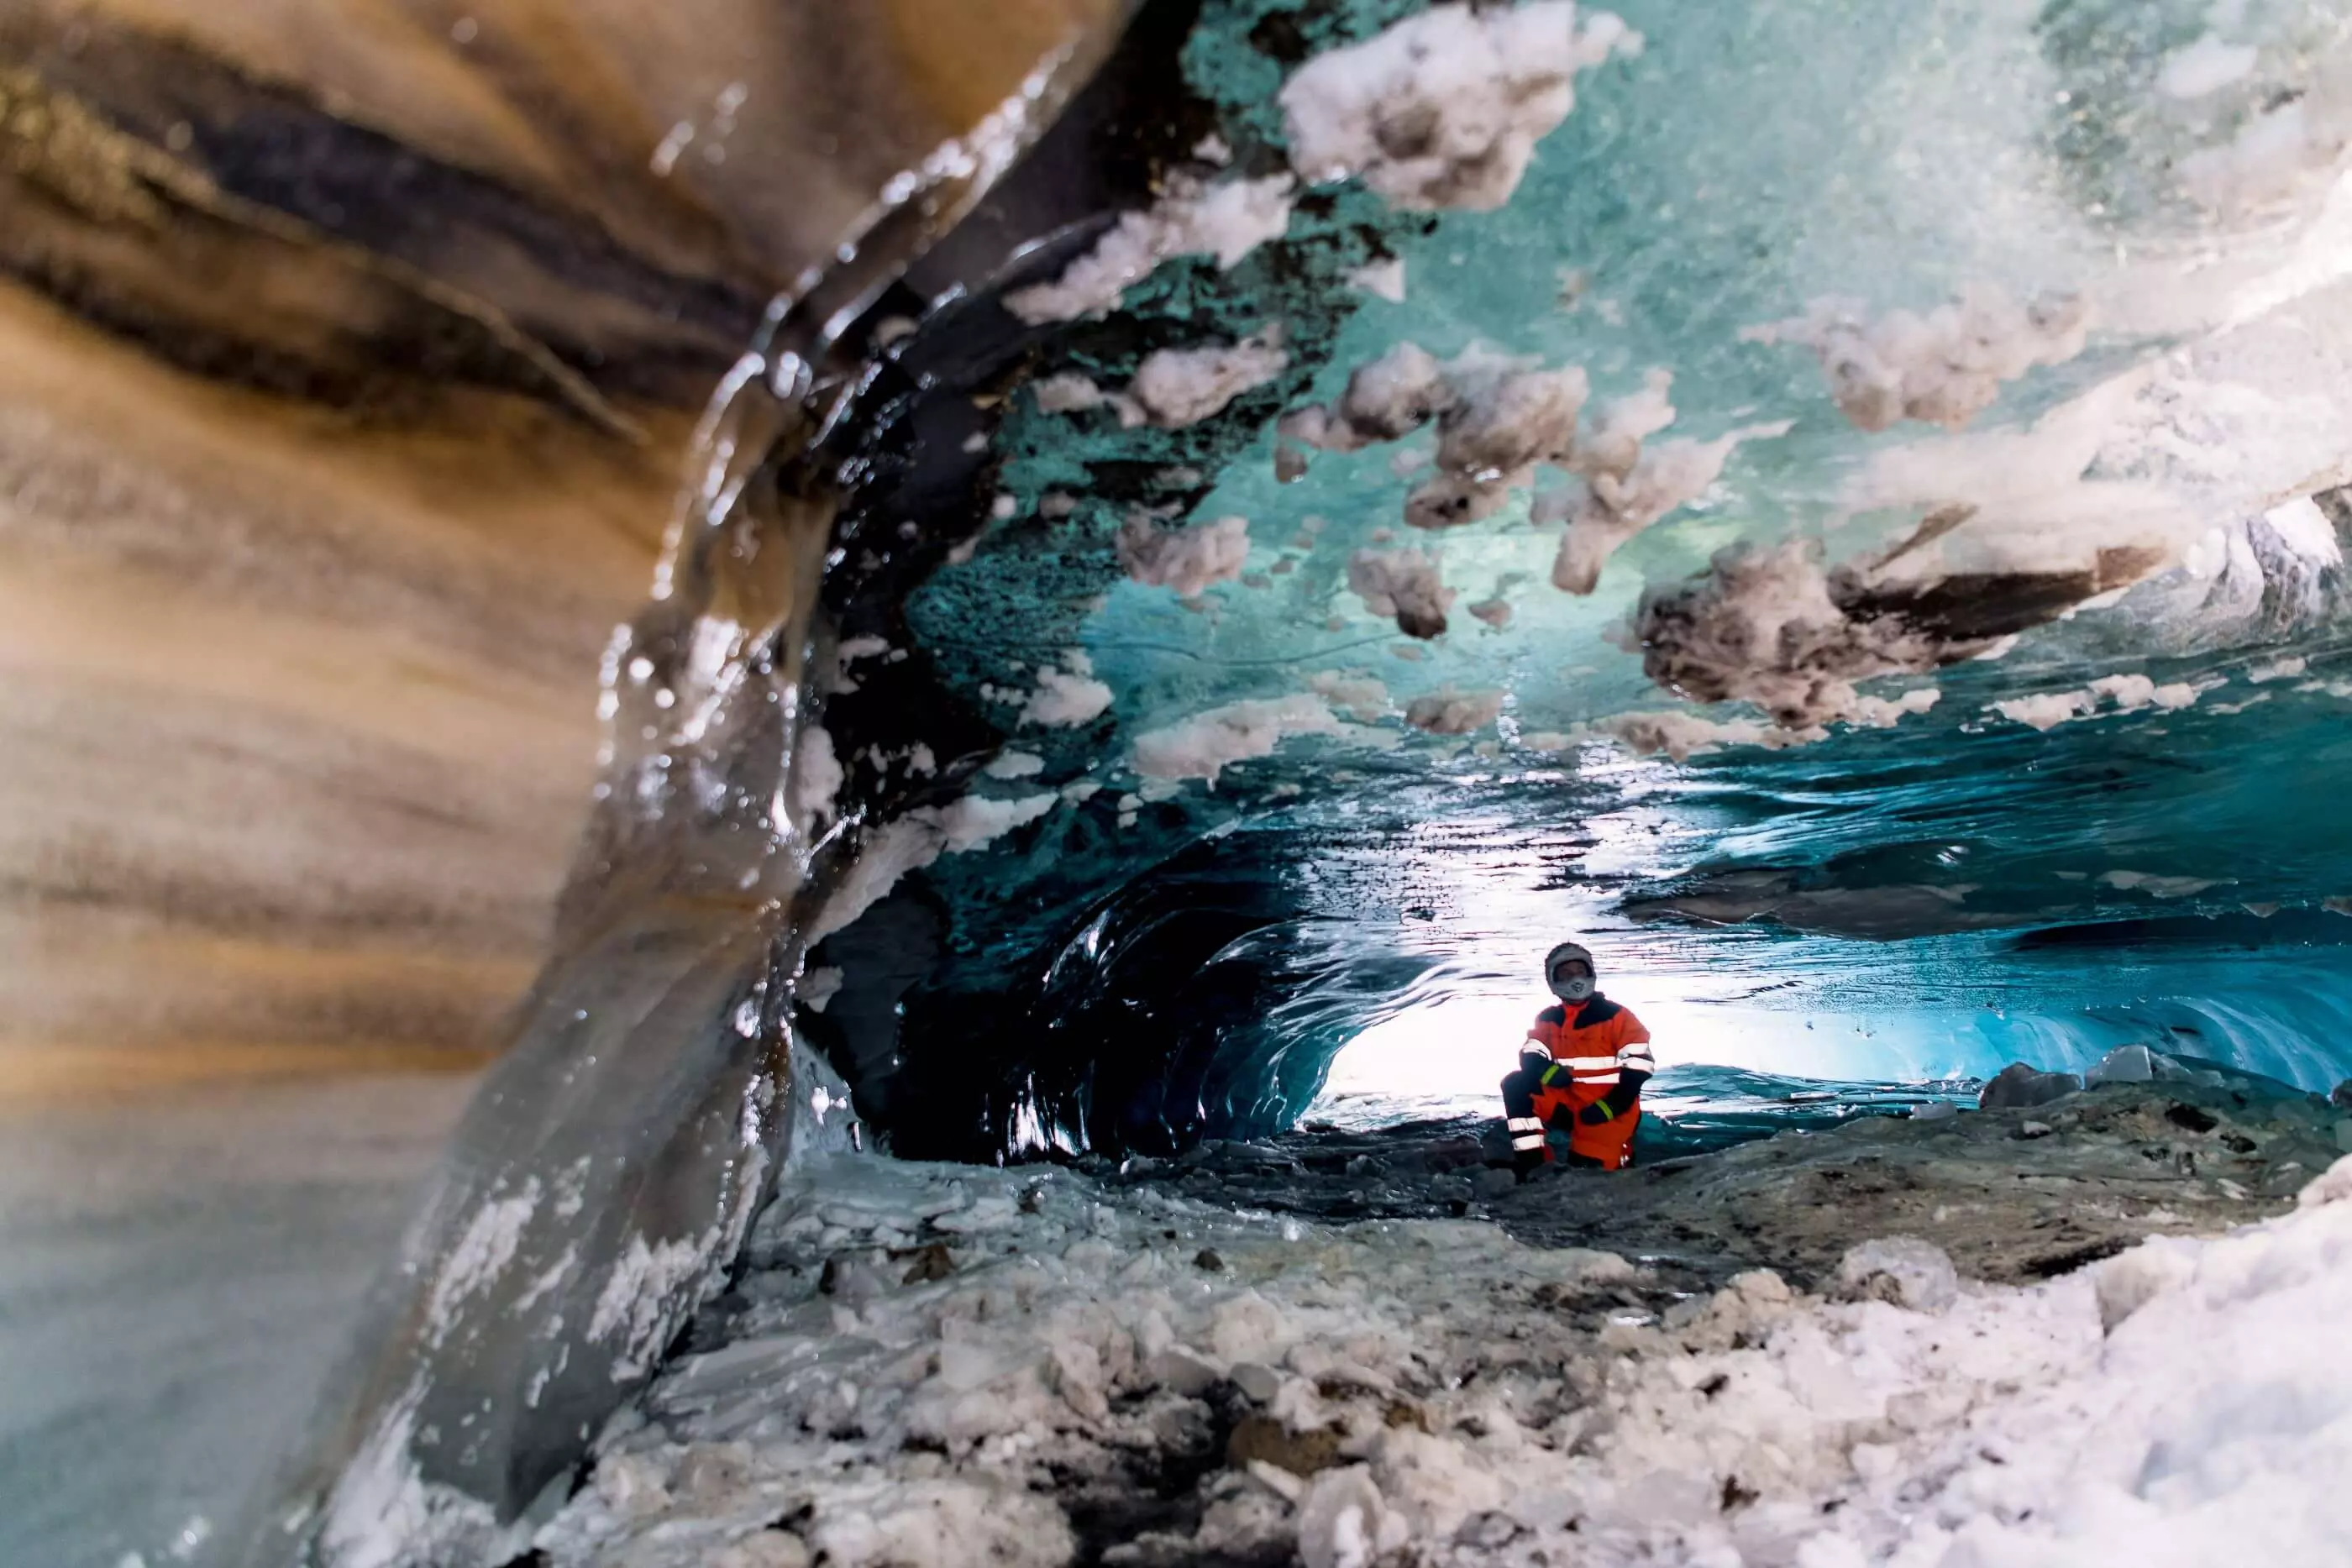 Ice cave at Langjökull Glacier, West Iceland